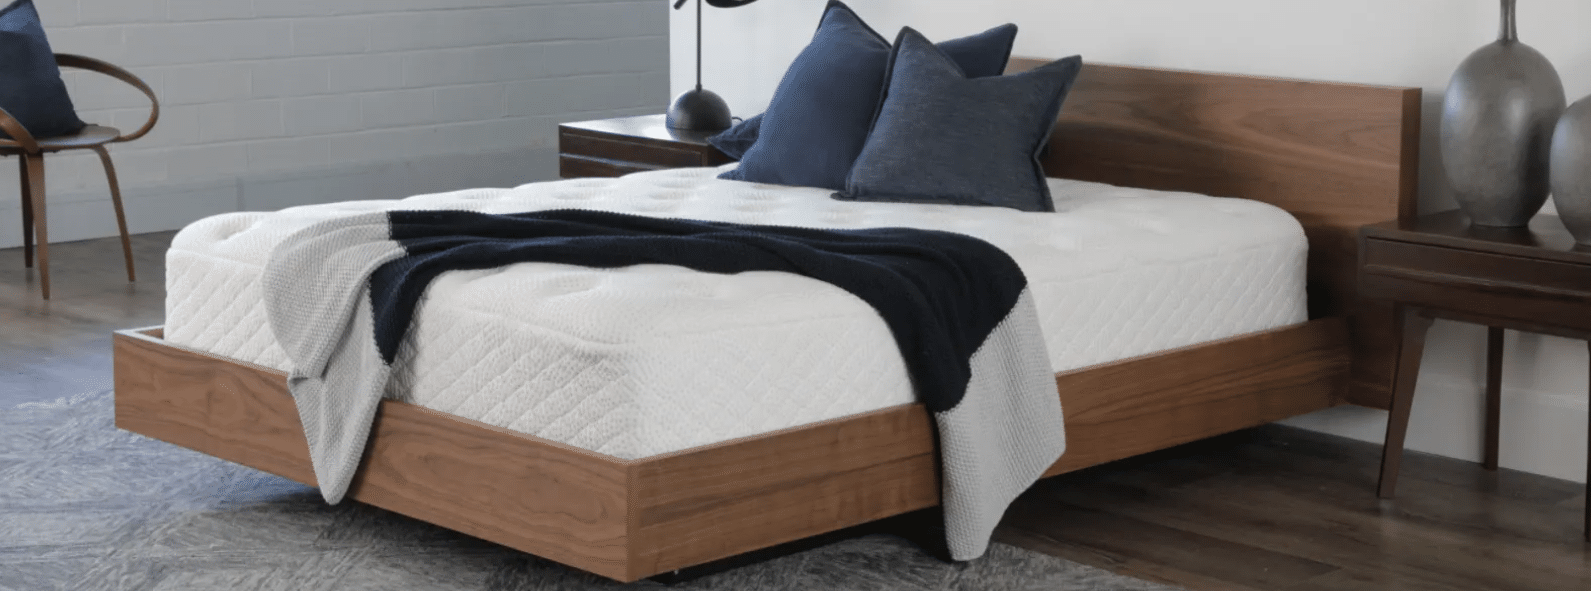 luuf simplicity mattress reviews